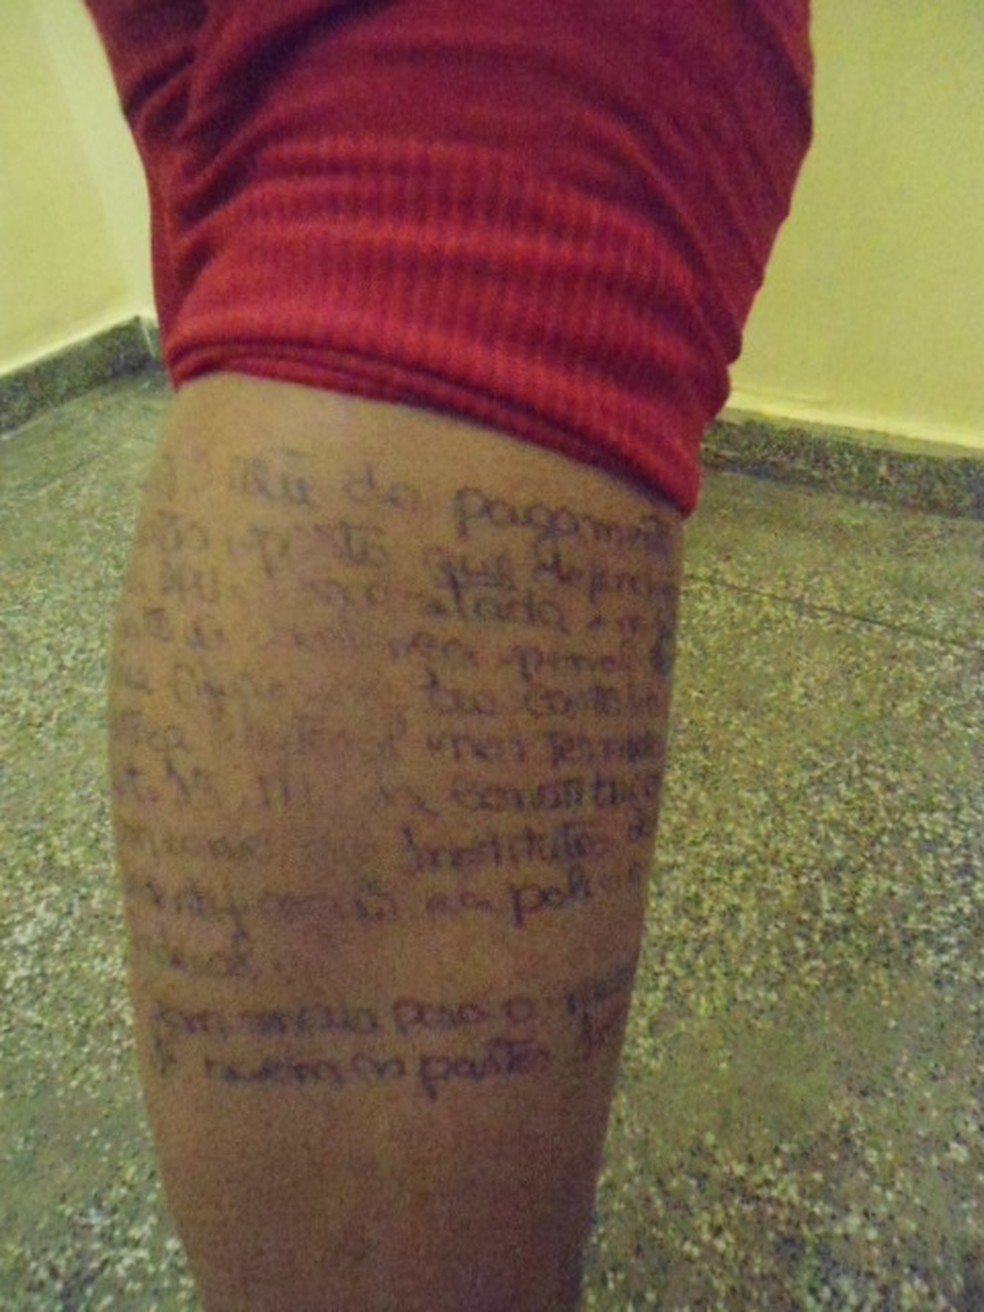 Costas e as pernas tinham textos referentes ao processo criminal do interno que seria visitado. — Foto: Seap/Divulgação